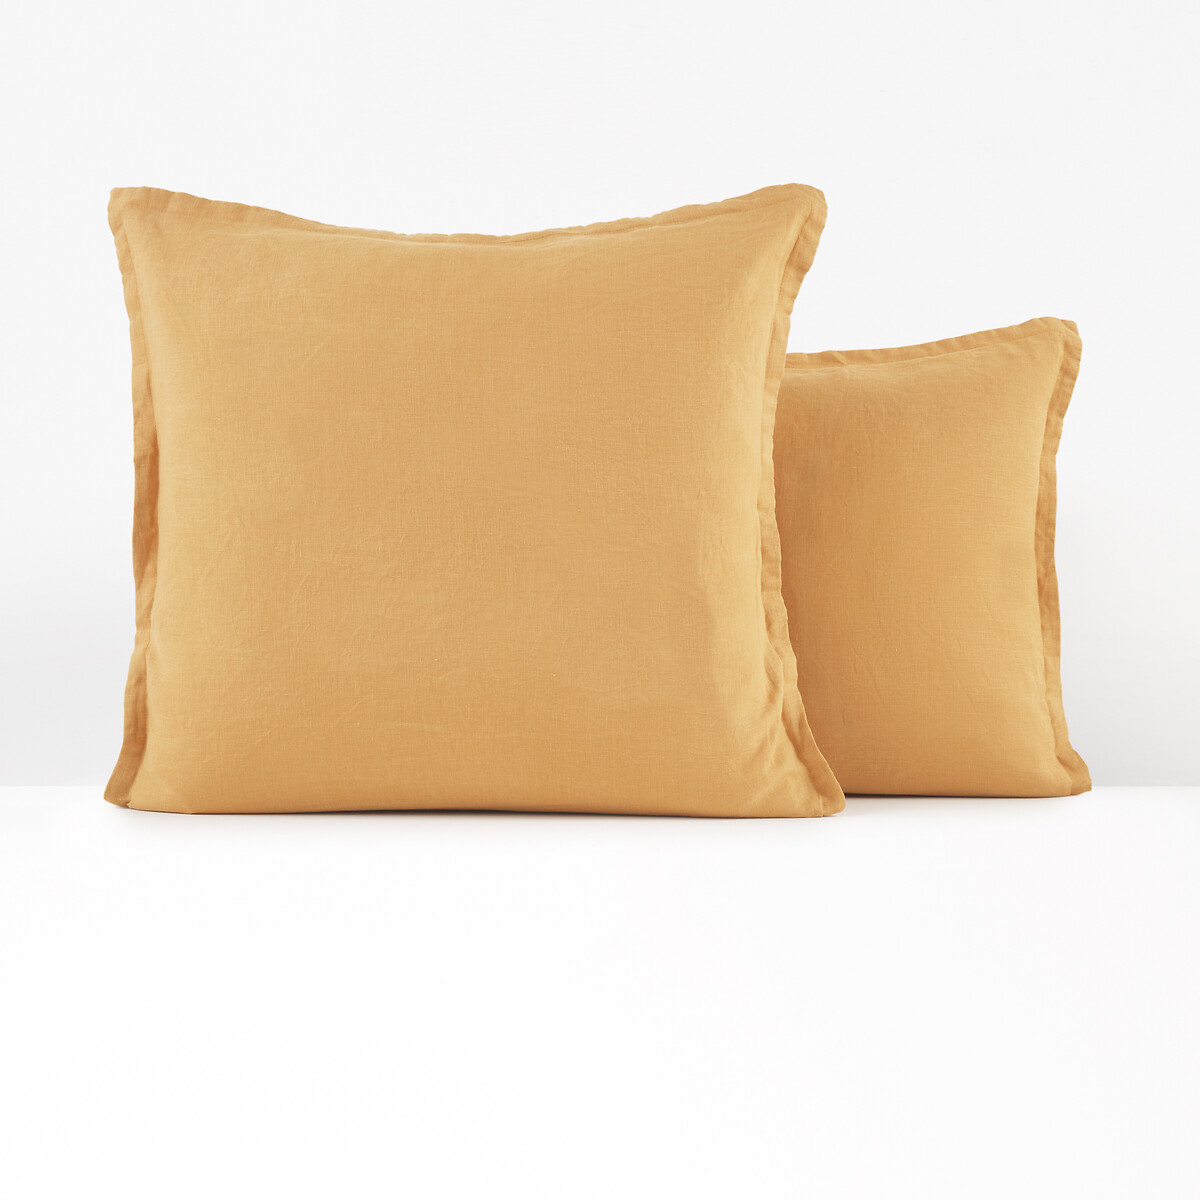 Наволочка однотонная на подушку или валик из стираного льна 63 x 63 см желтый